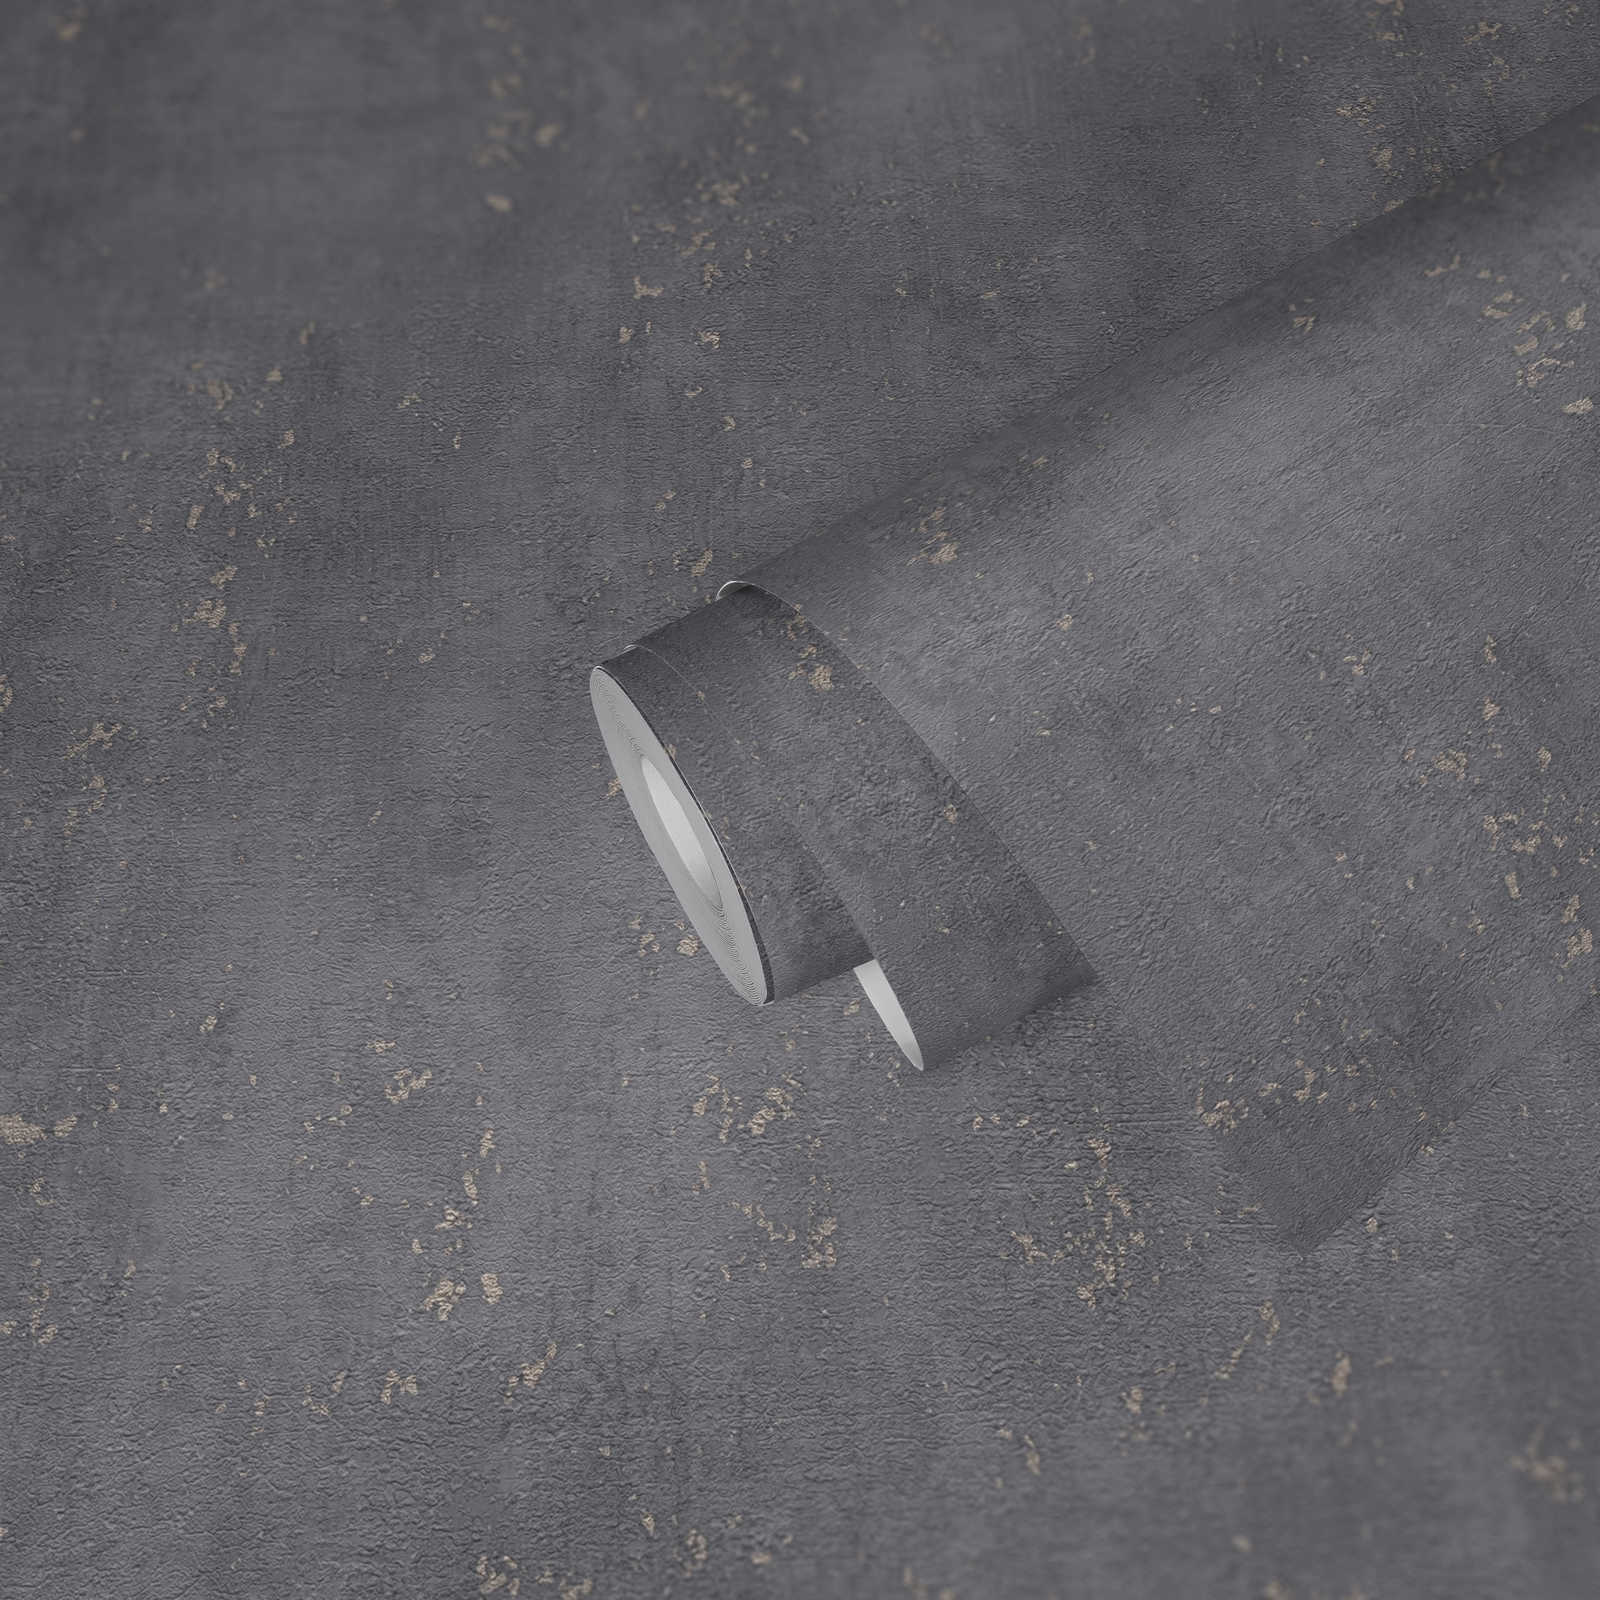             papel pintado texturizado aspecto de yeso gris con acento metálico - gris
        